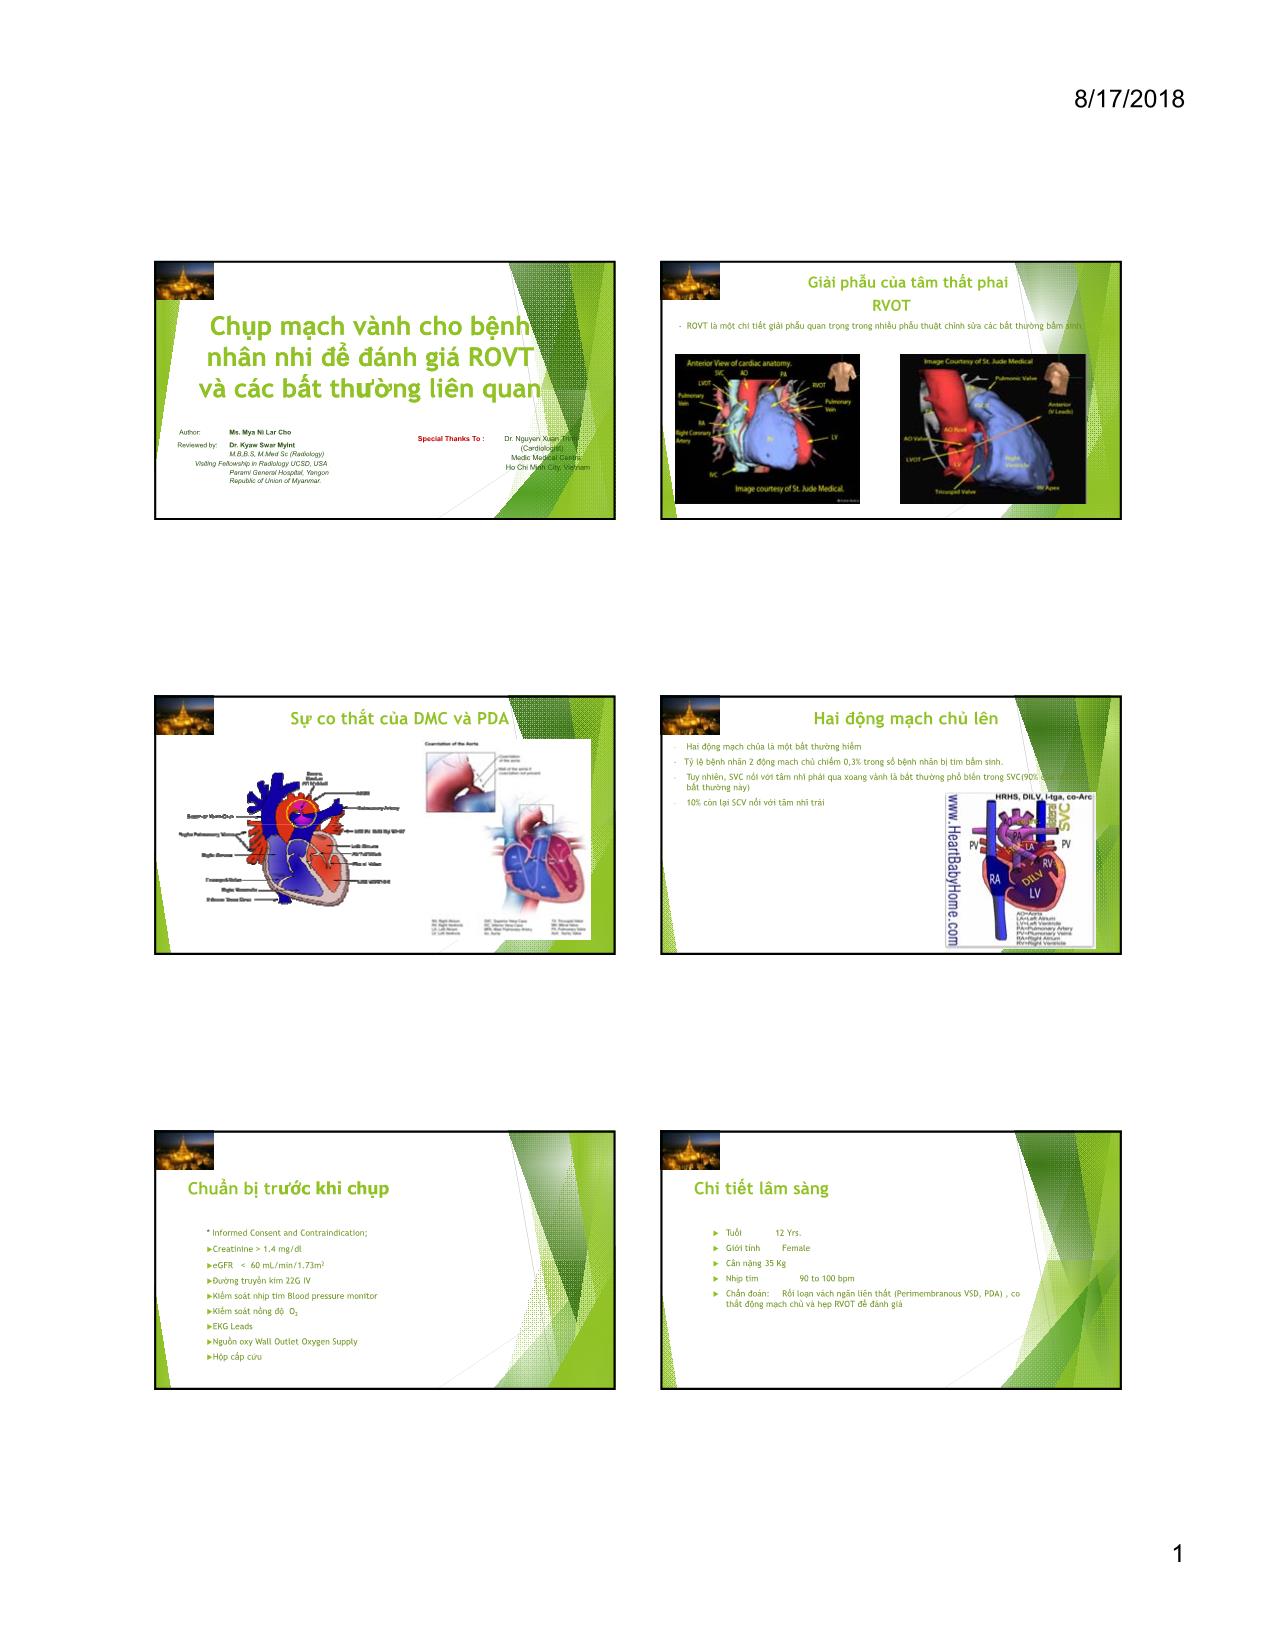 Chụp mạch vành cho bệnh nhân nhi để đánh giá ROVT và các bất thường liên quan trang 1